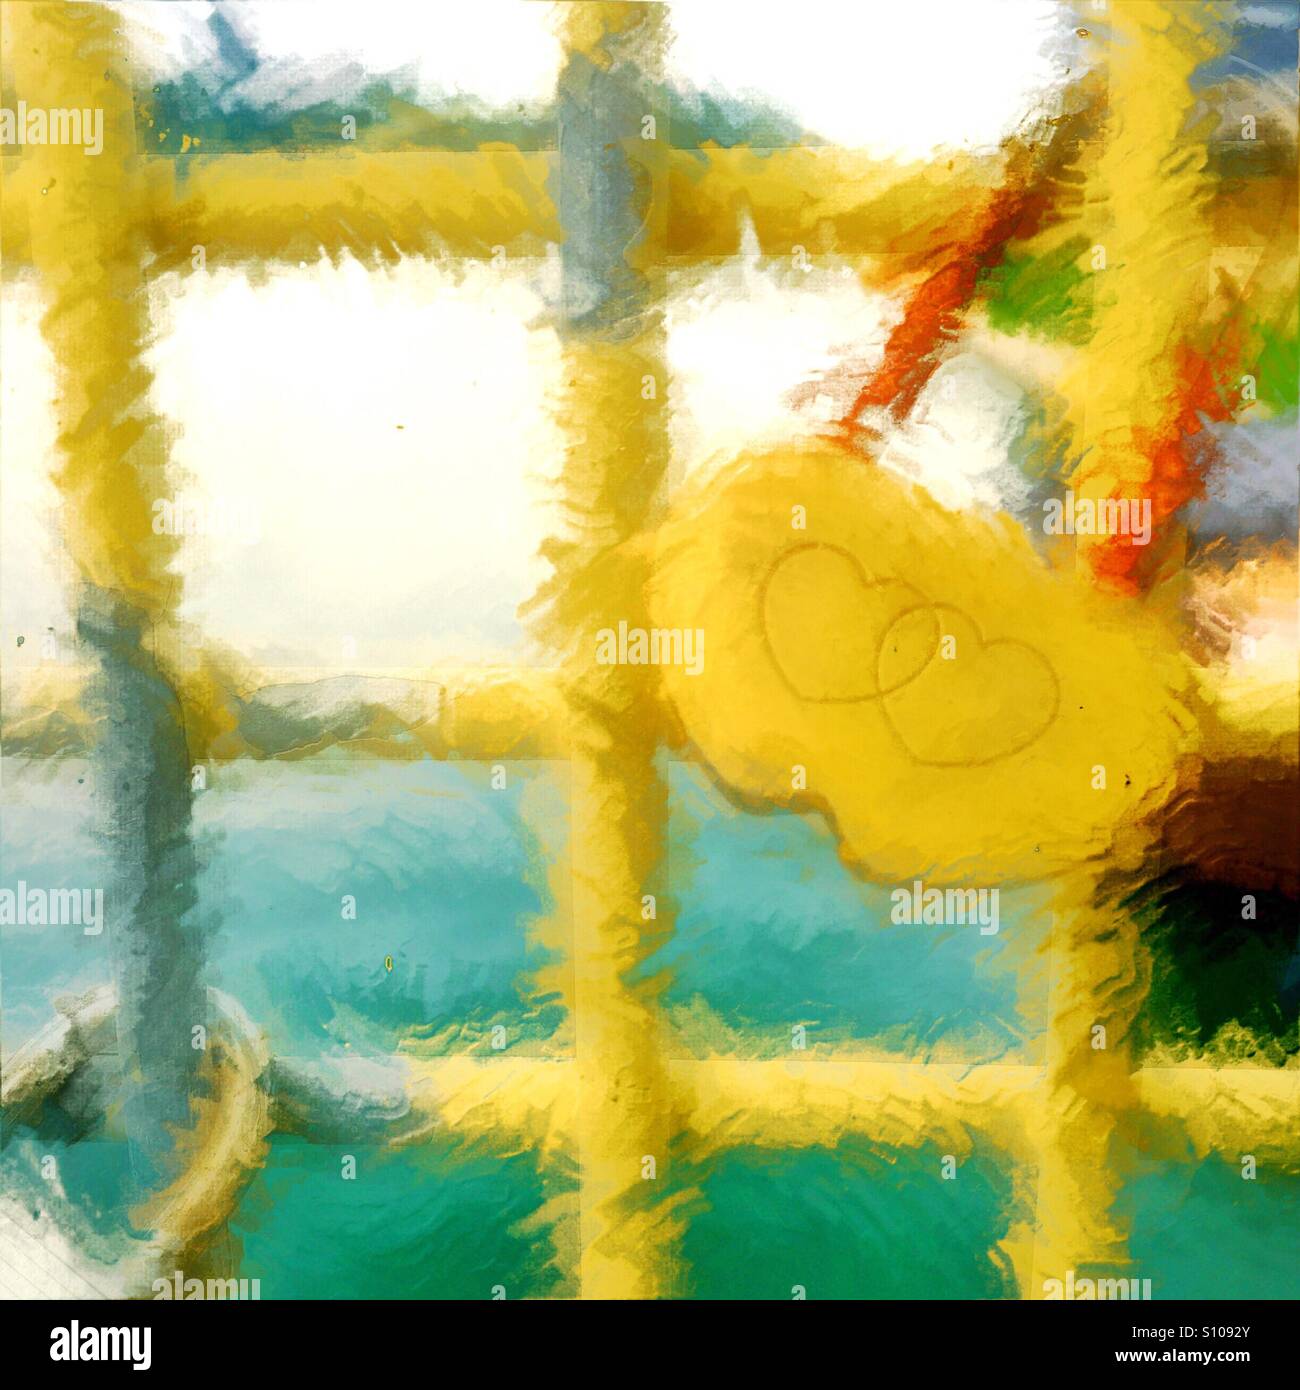 Une peinture numérique artistique d'une serrure avec deux cœurs entrelacés sur un pont suspendu. Banque D'Images